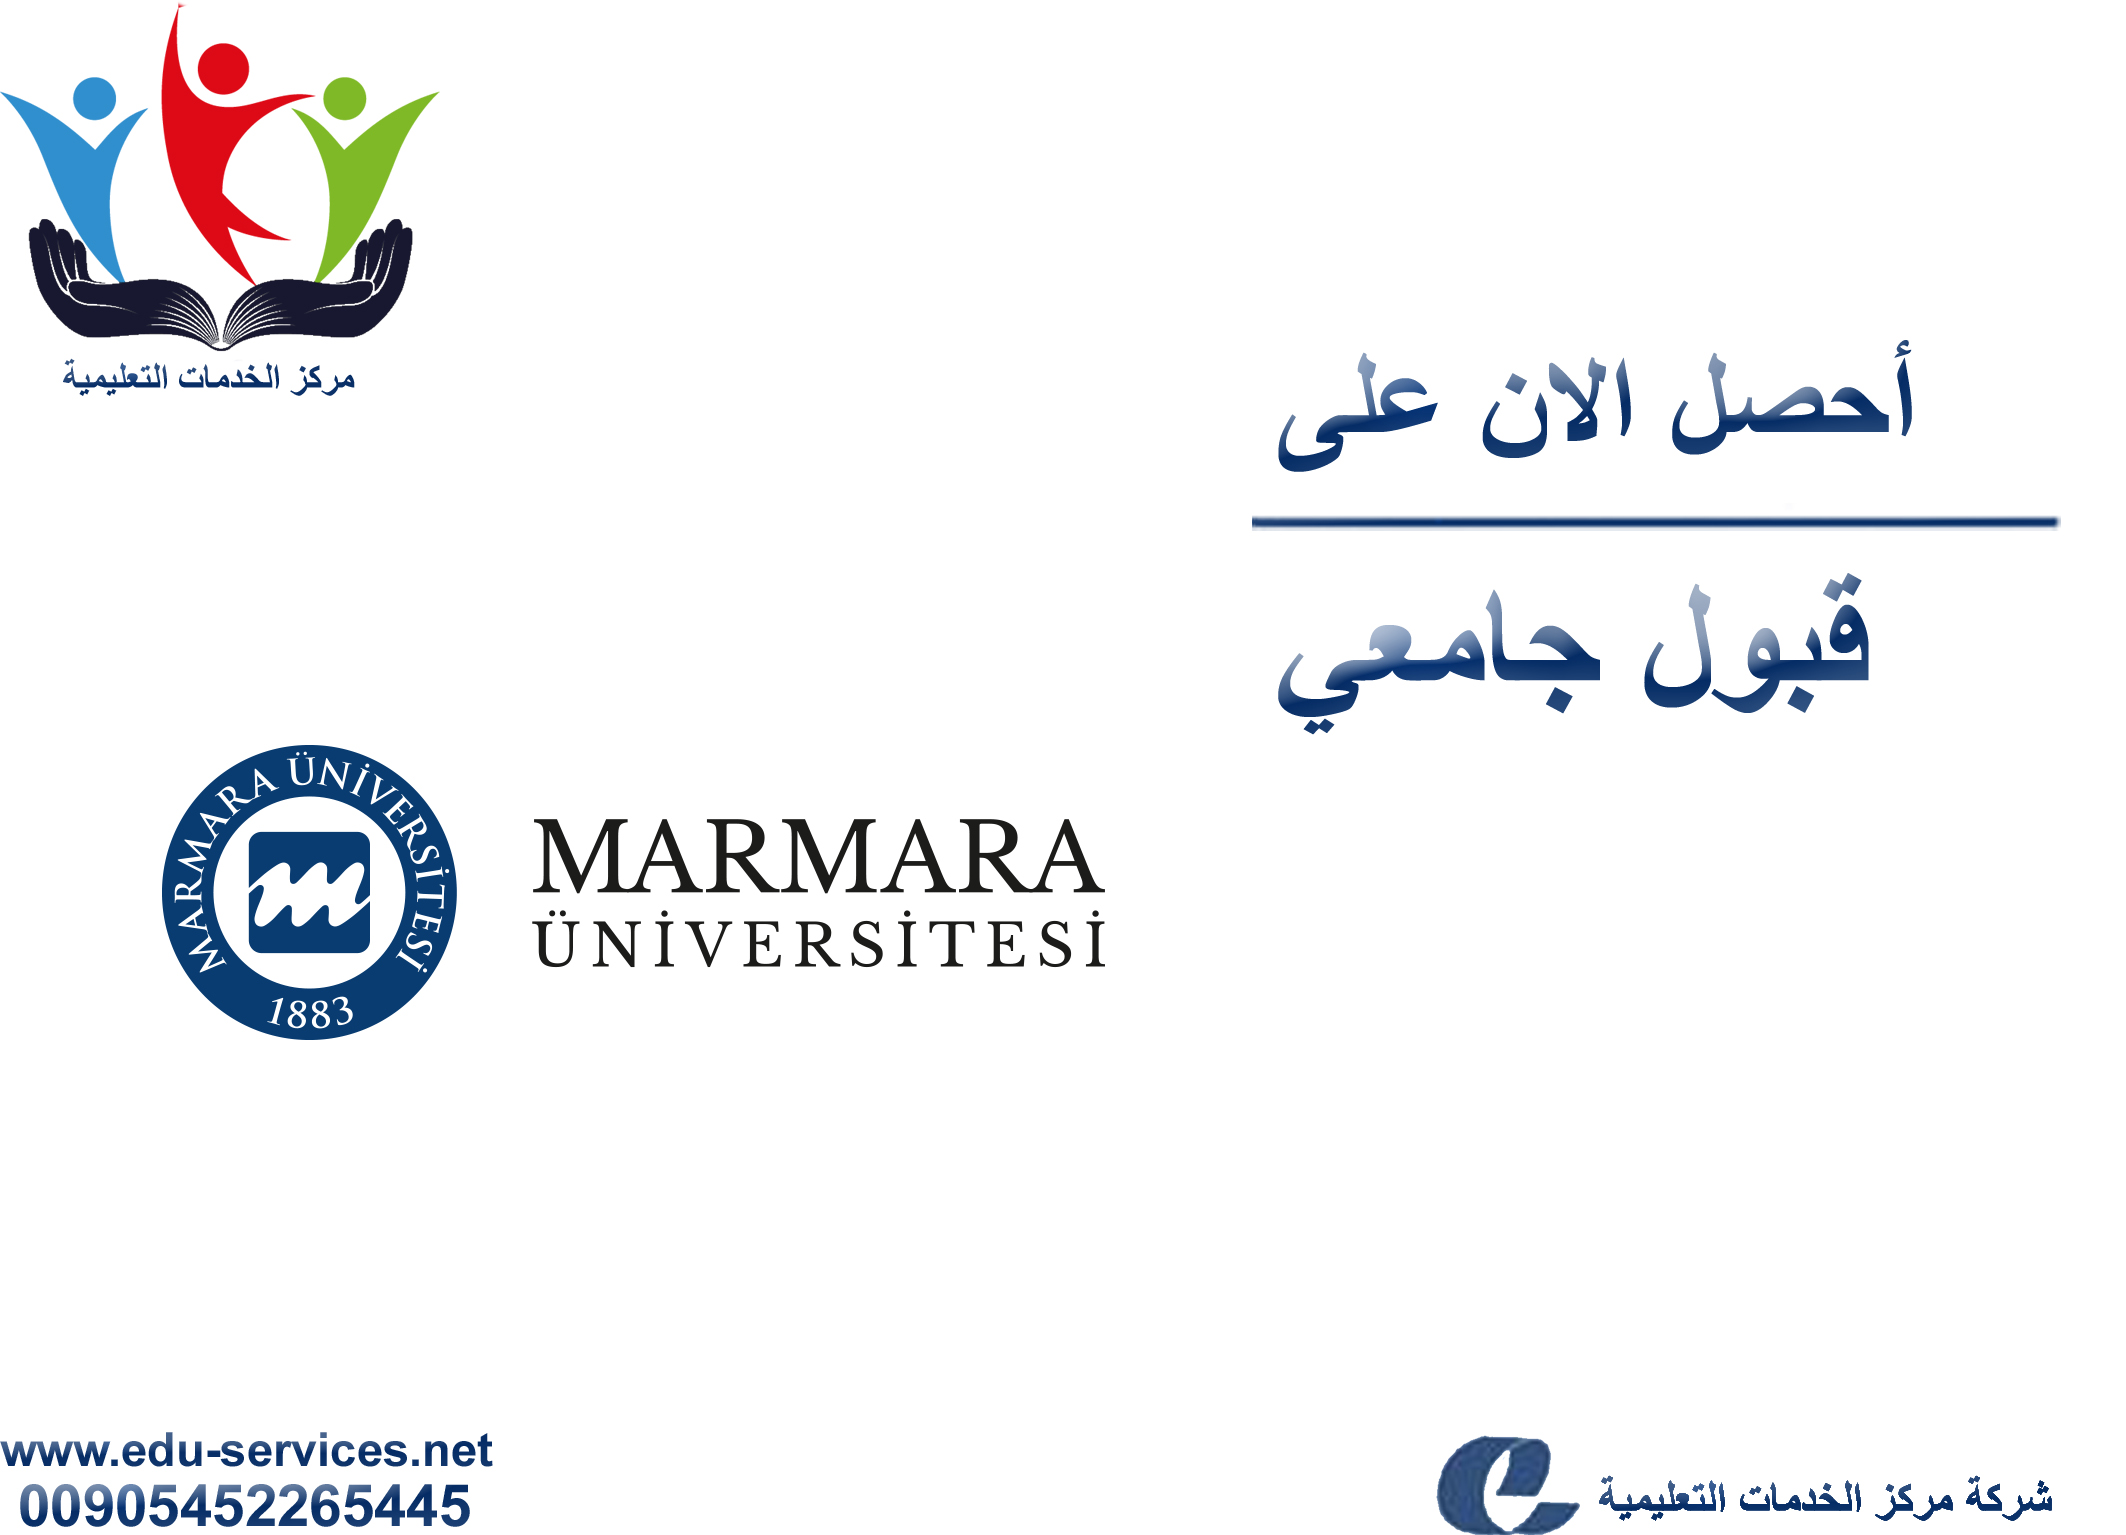 افتتاح التسجيل في جامعة مرمرة للعام 2017-2018